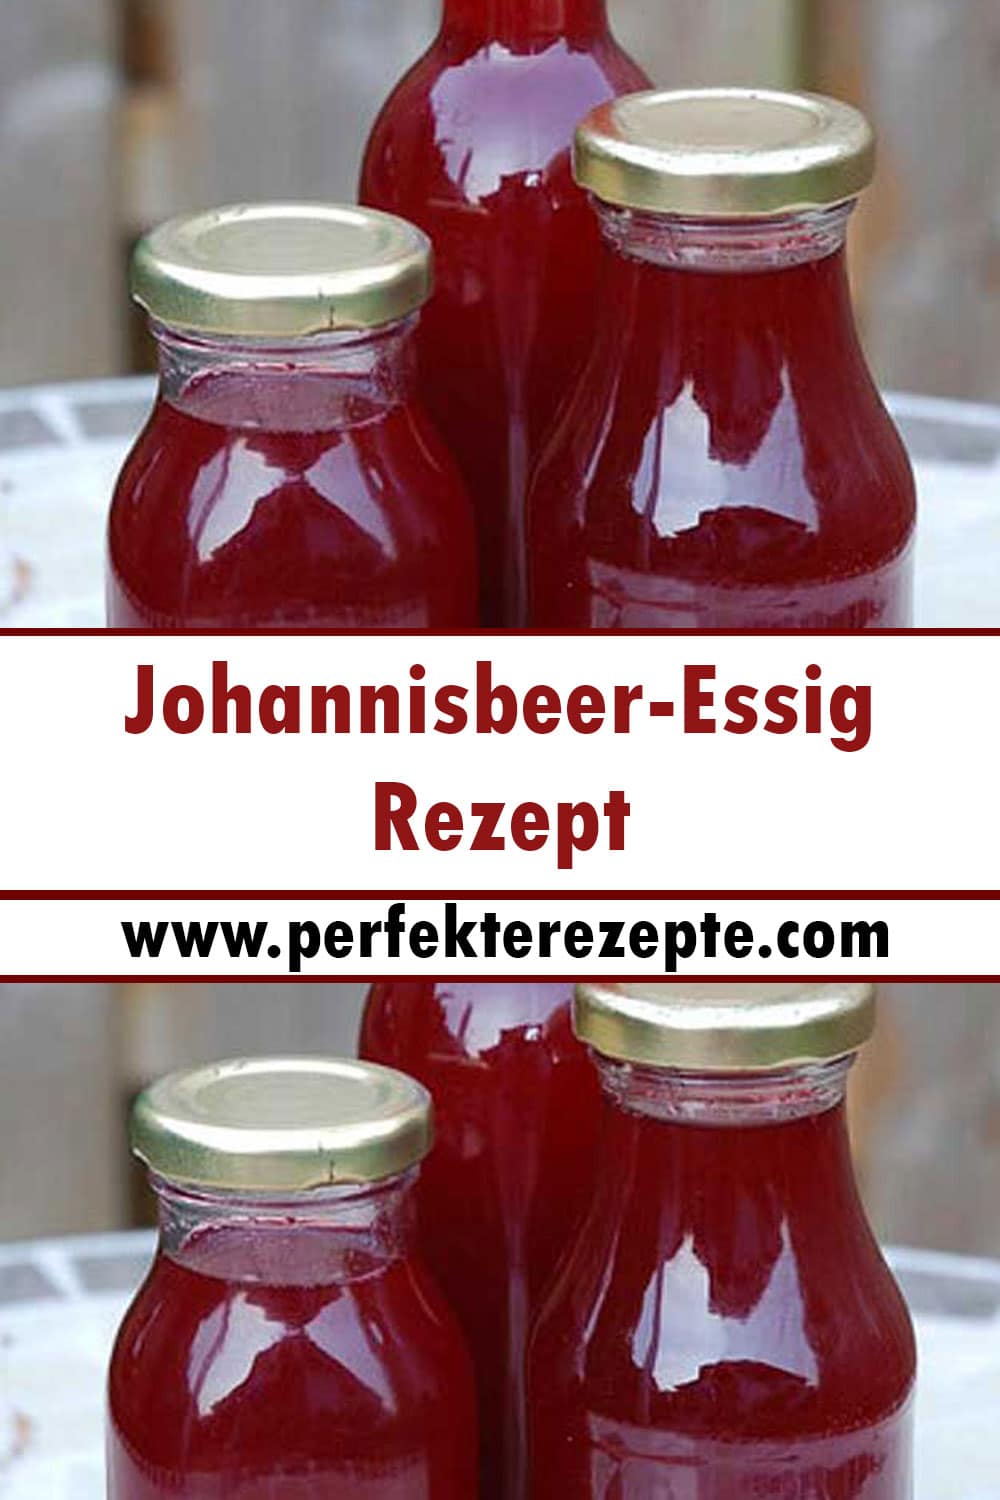 Johannisbeer-Essig Rezept